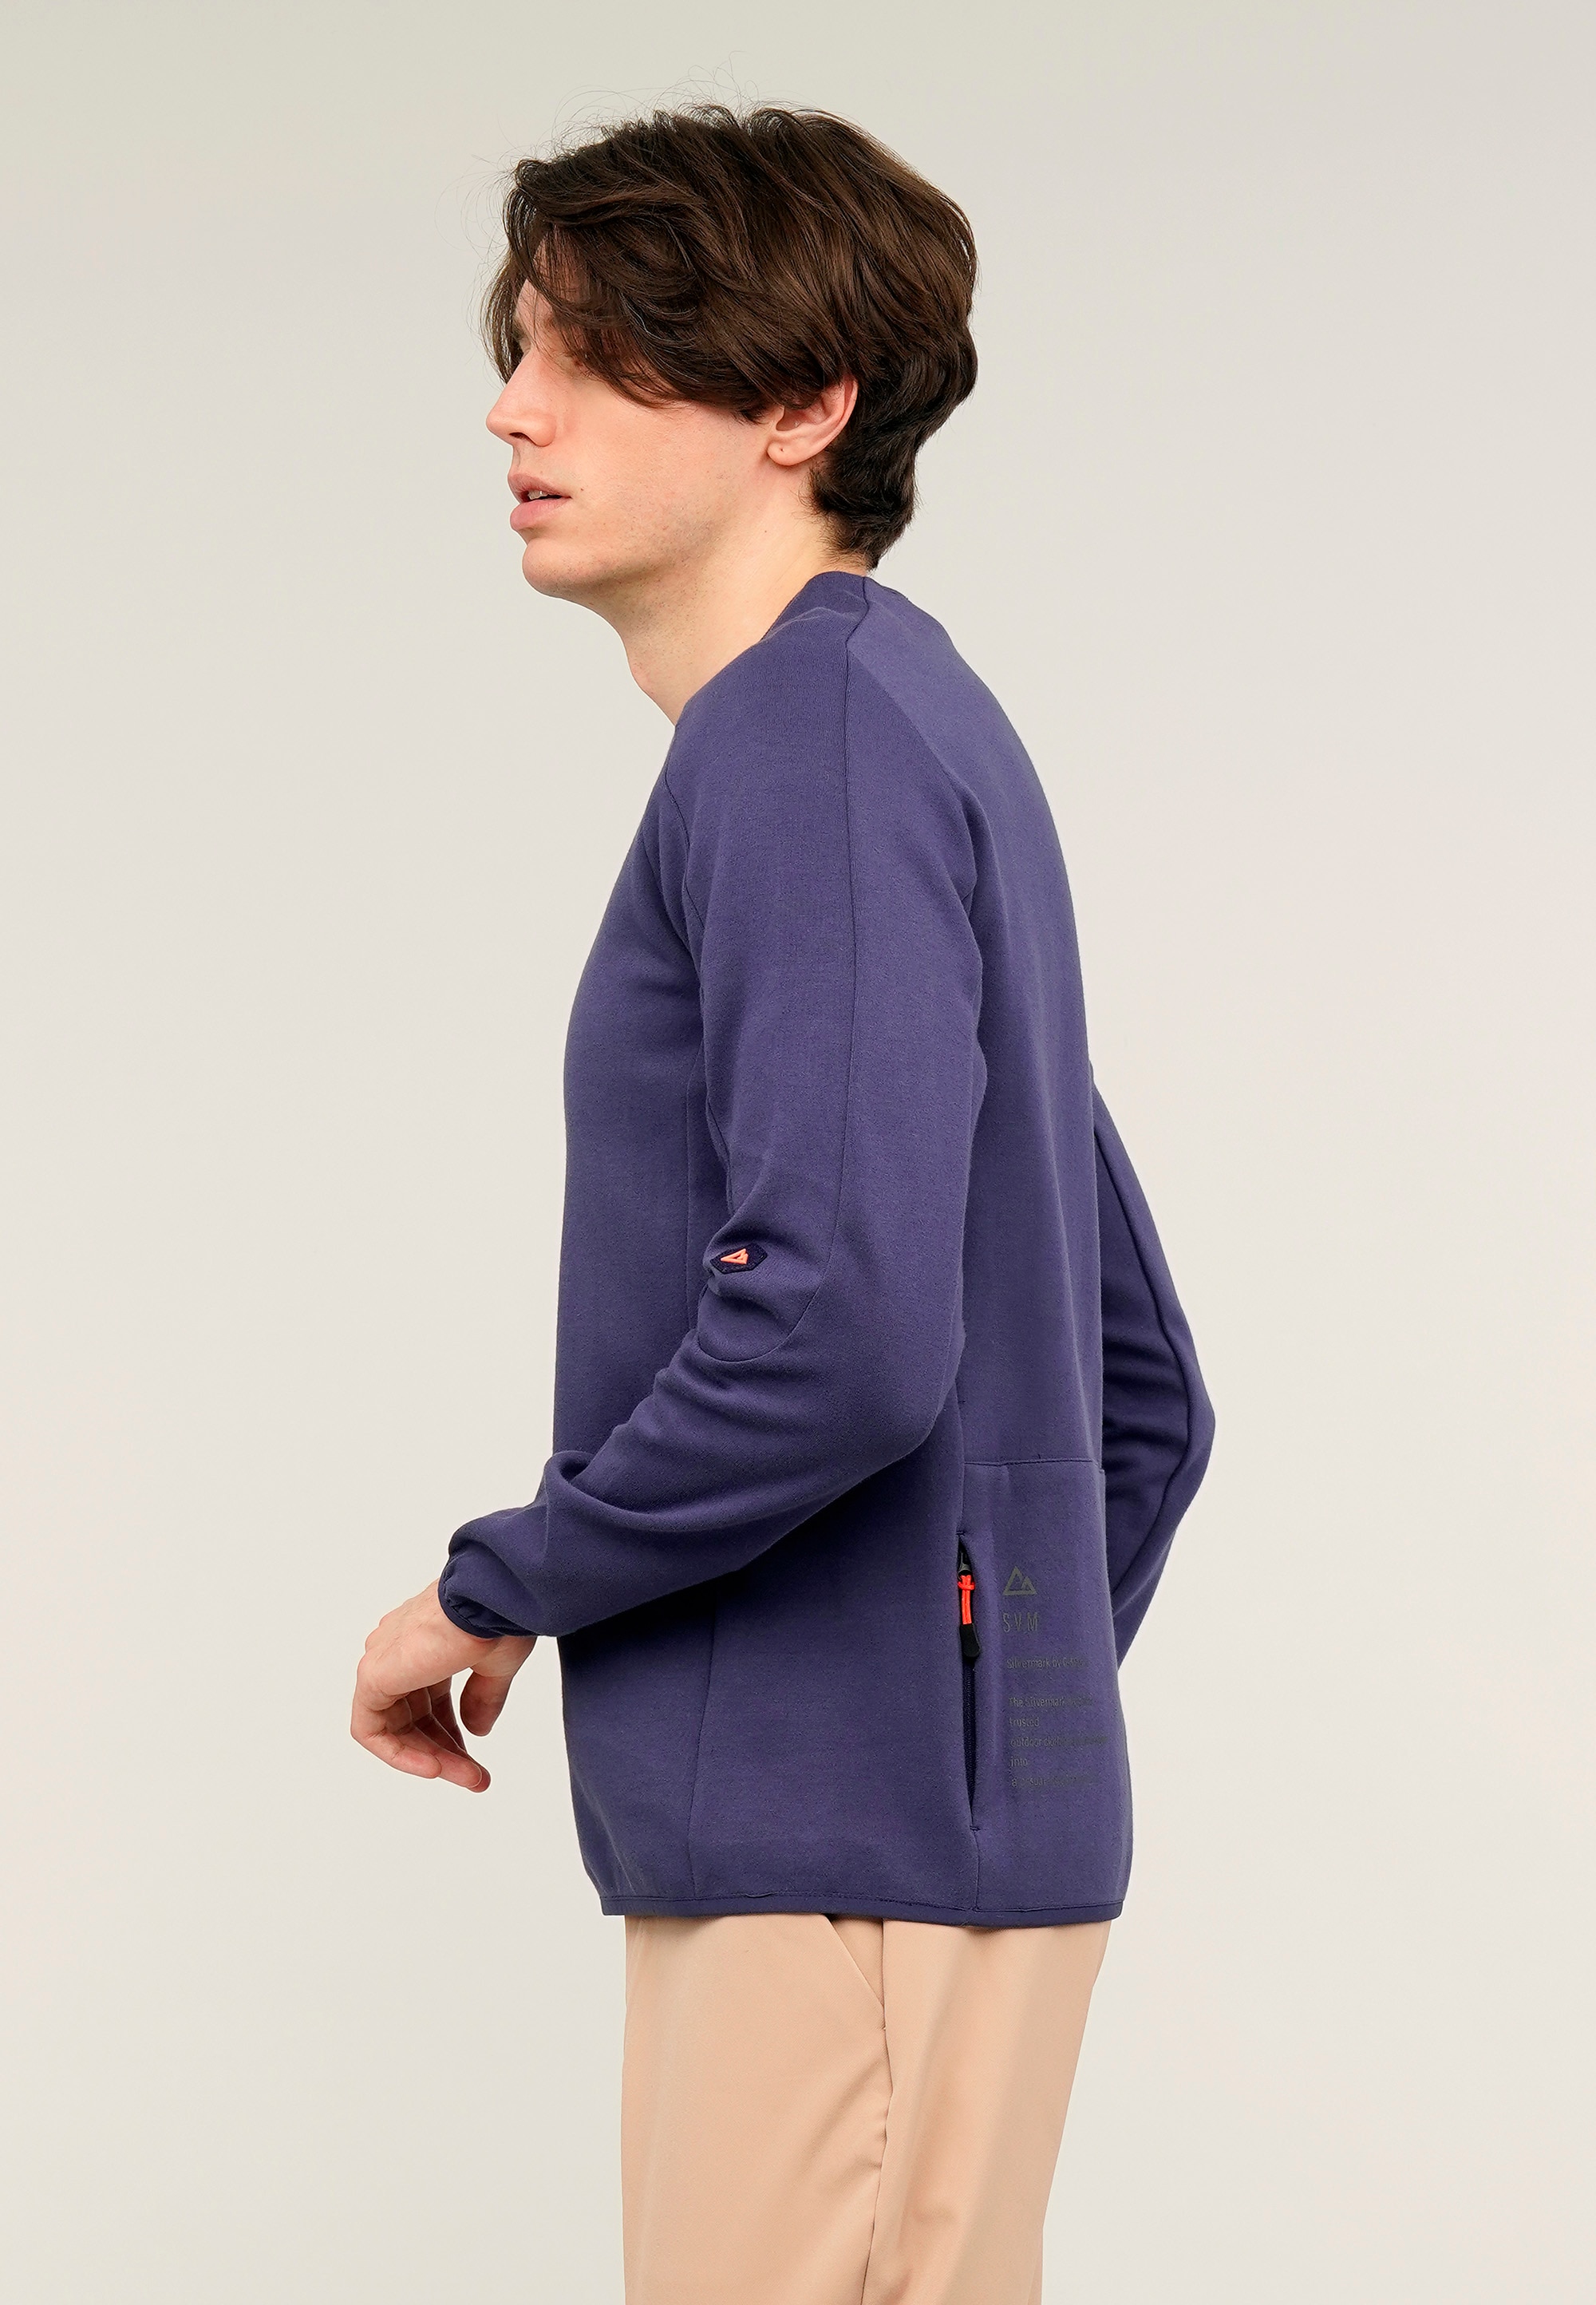 GIORDANO Sweatshirt »Silvermark by G-Motion«, mit praktischen Rückentaschen